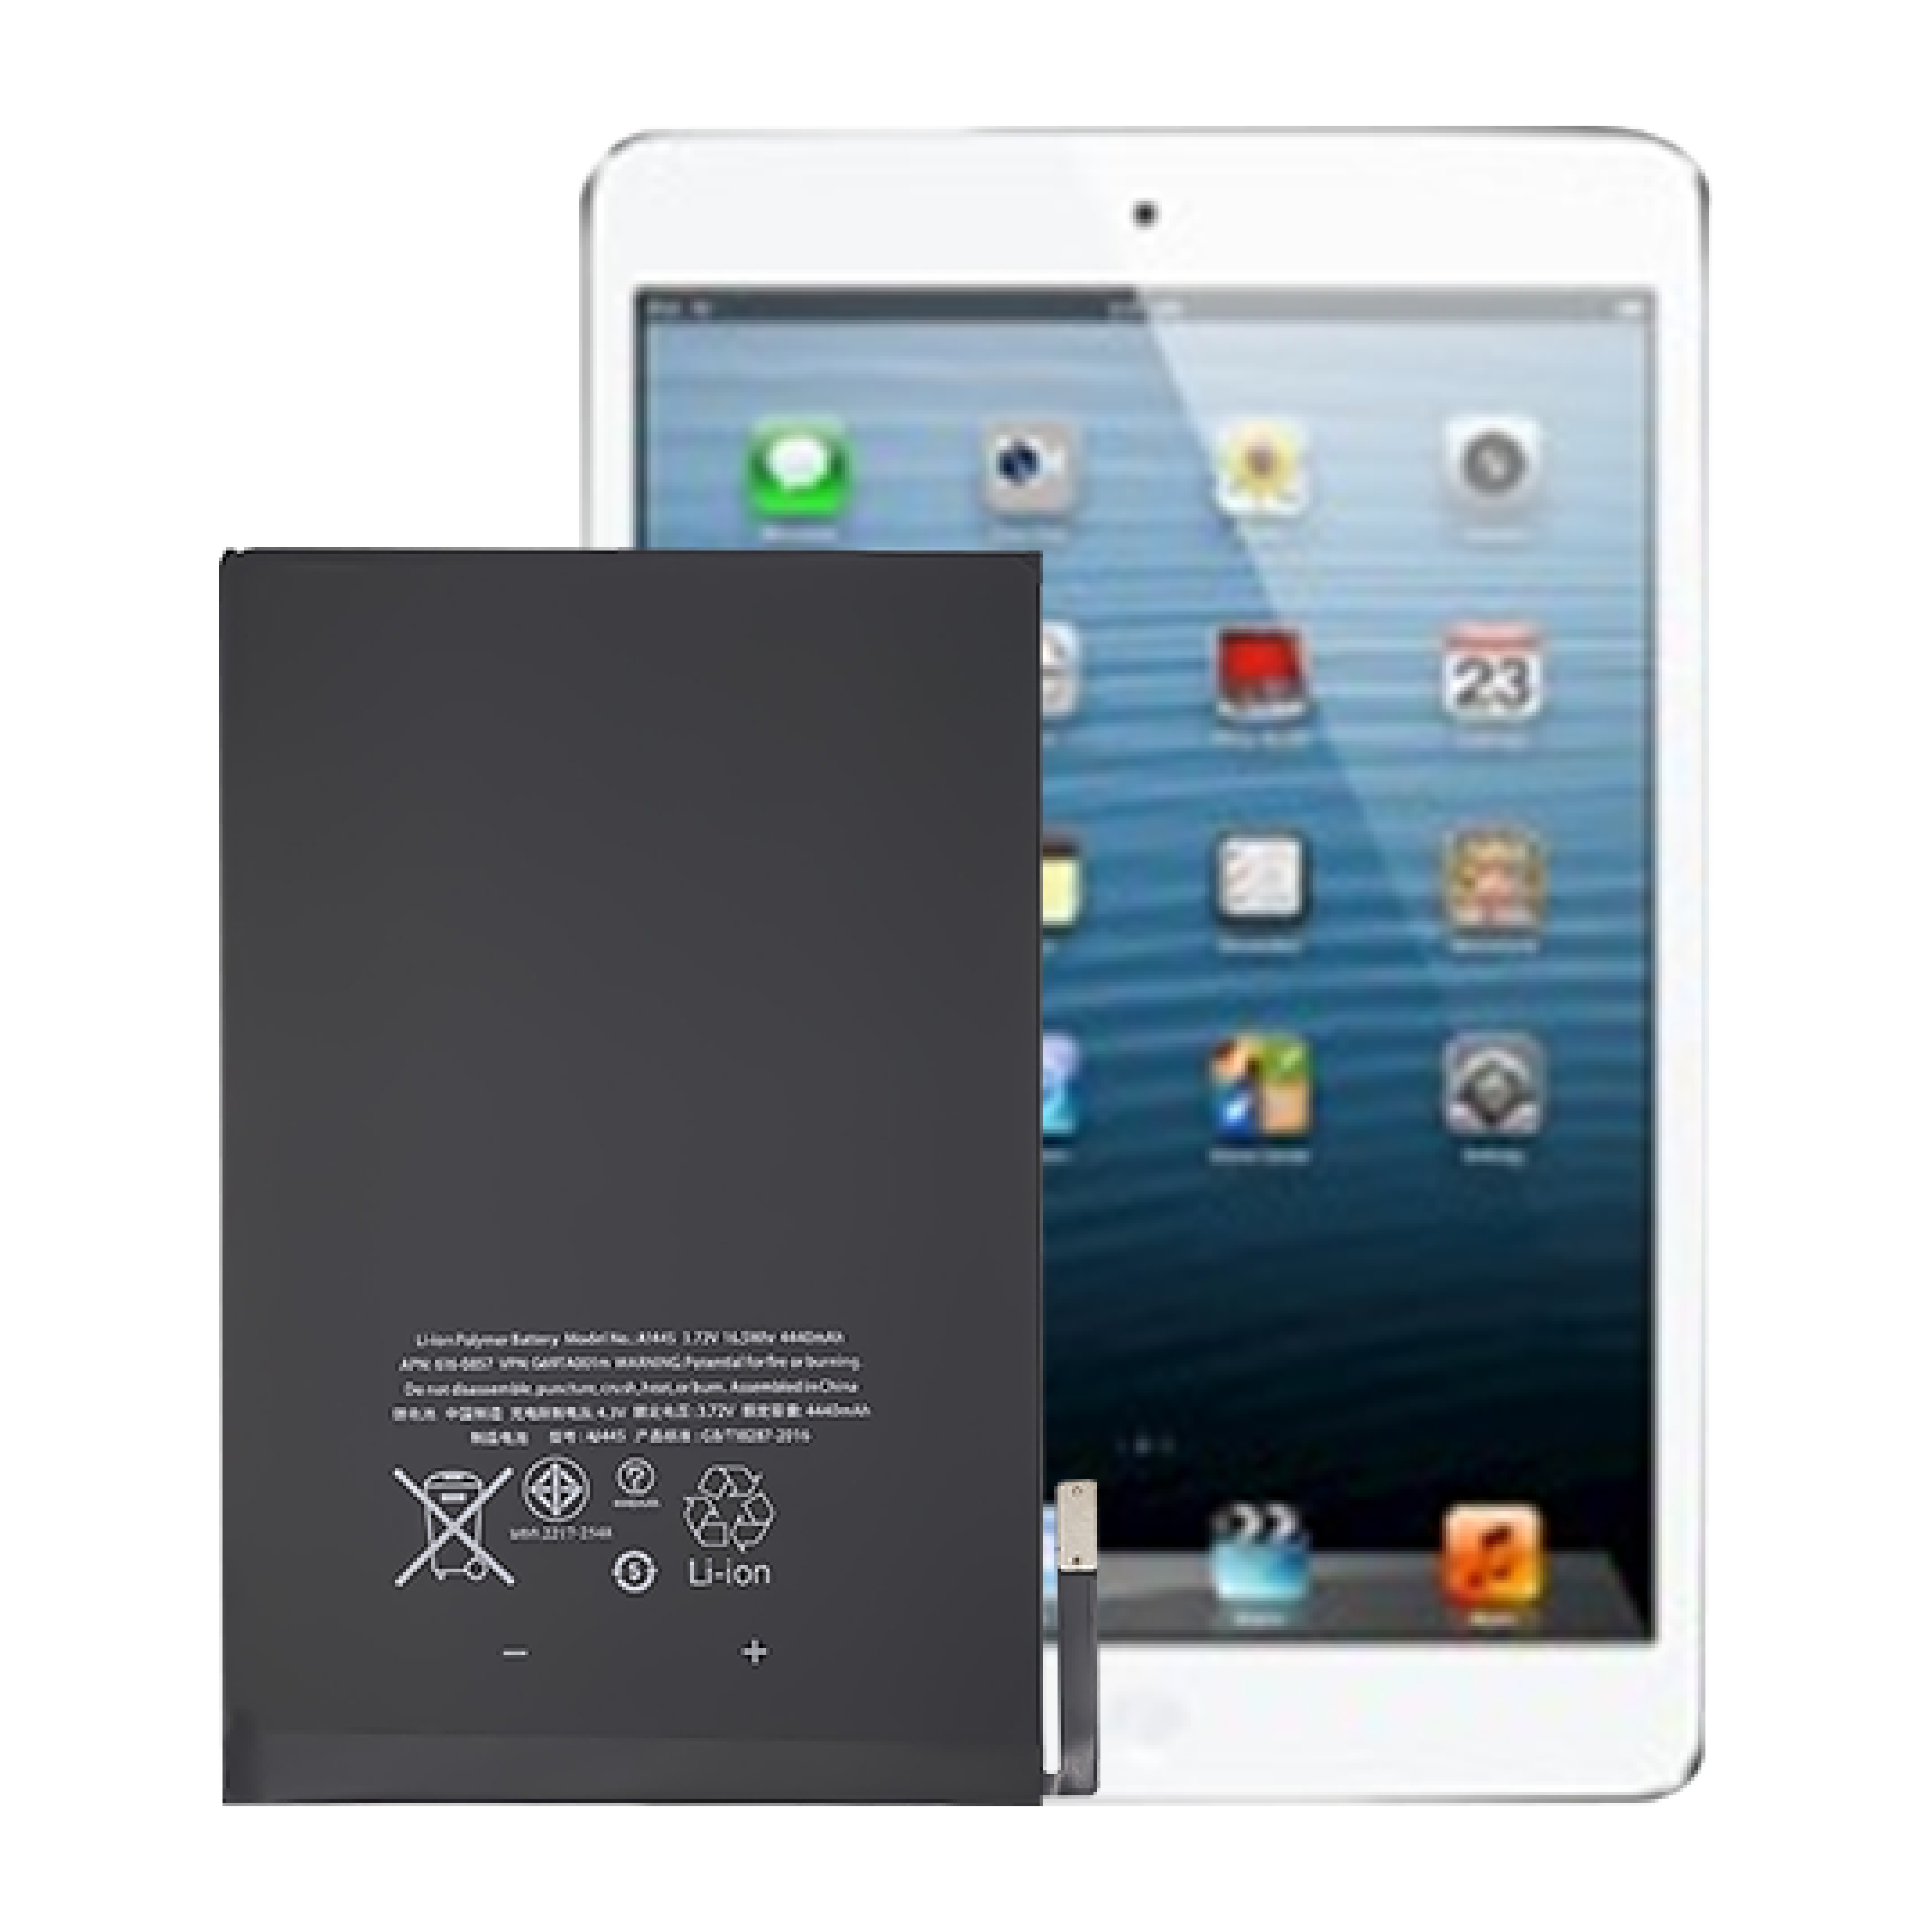 Batterie interne pour tablette Apple iPad mini1, 0 cycle, flambant neuf, haute qualité, OEM